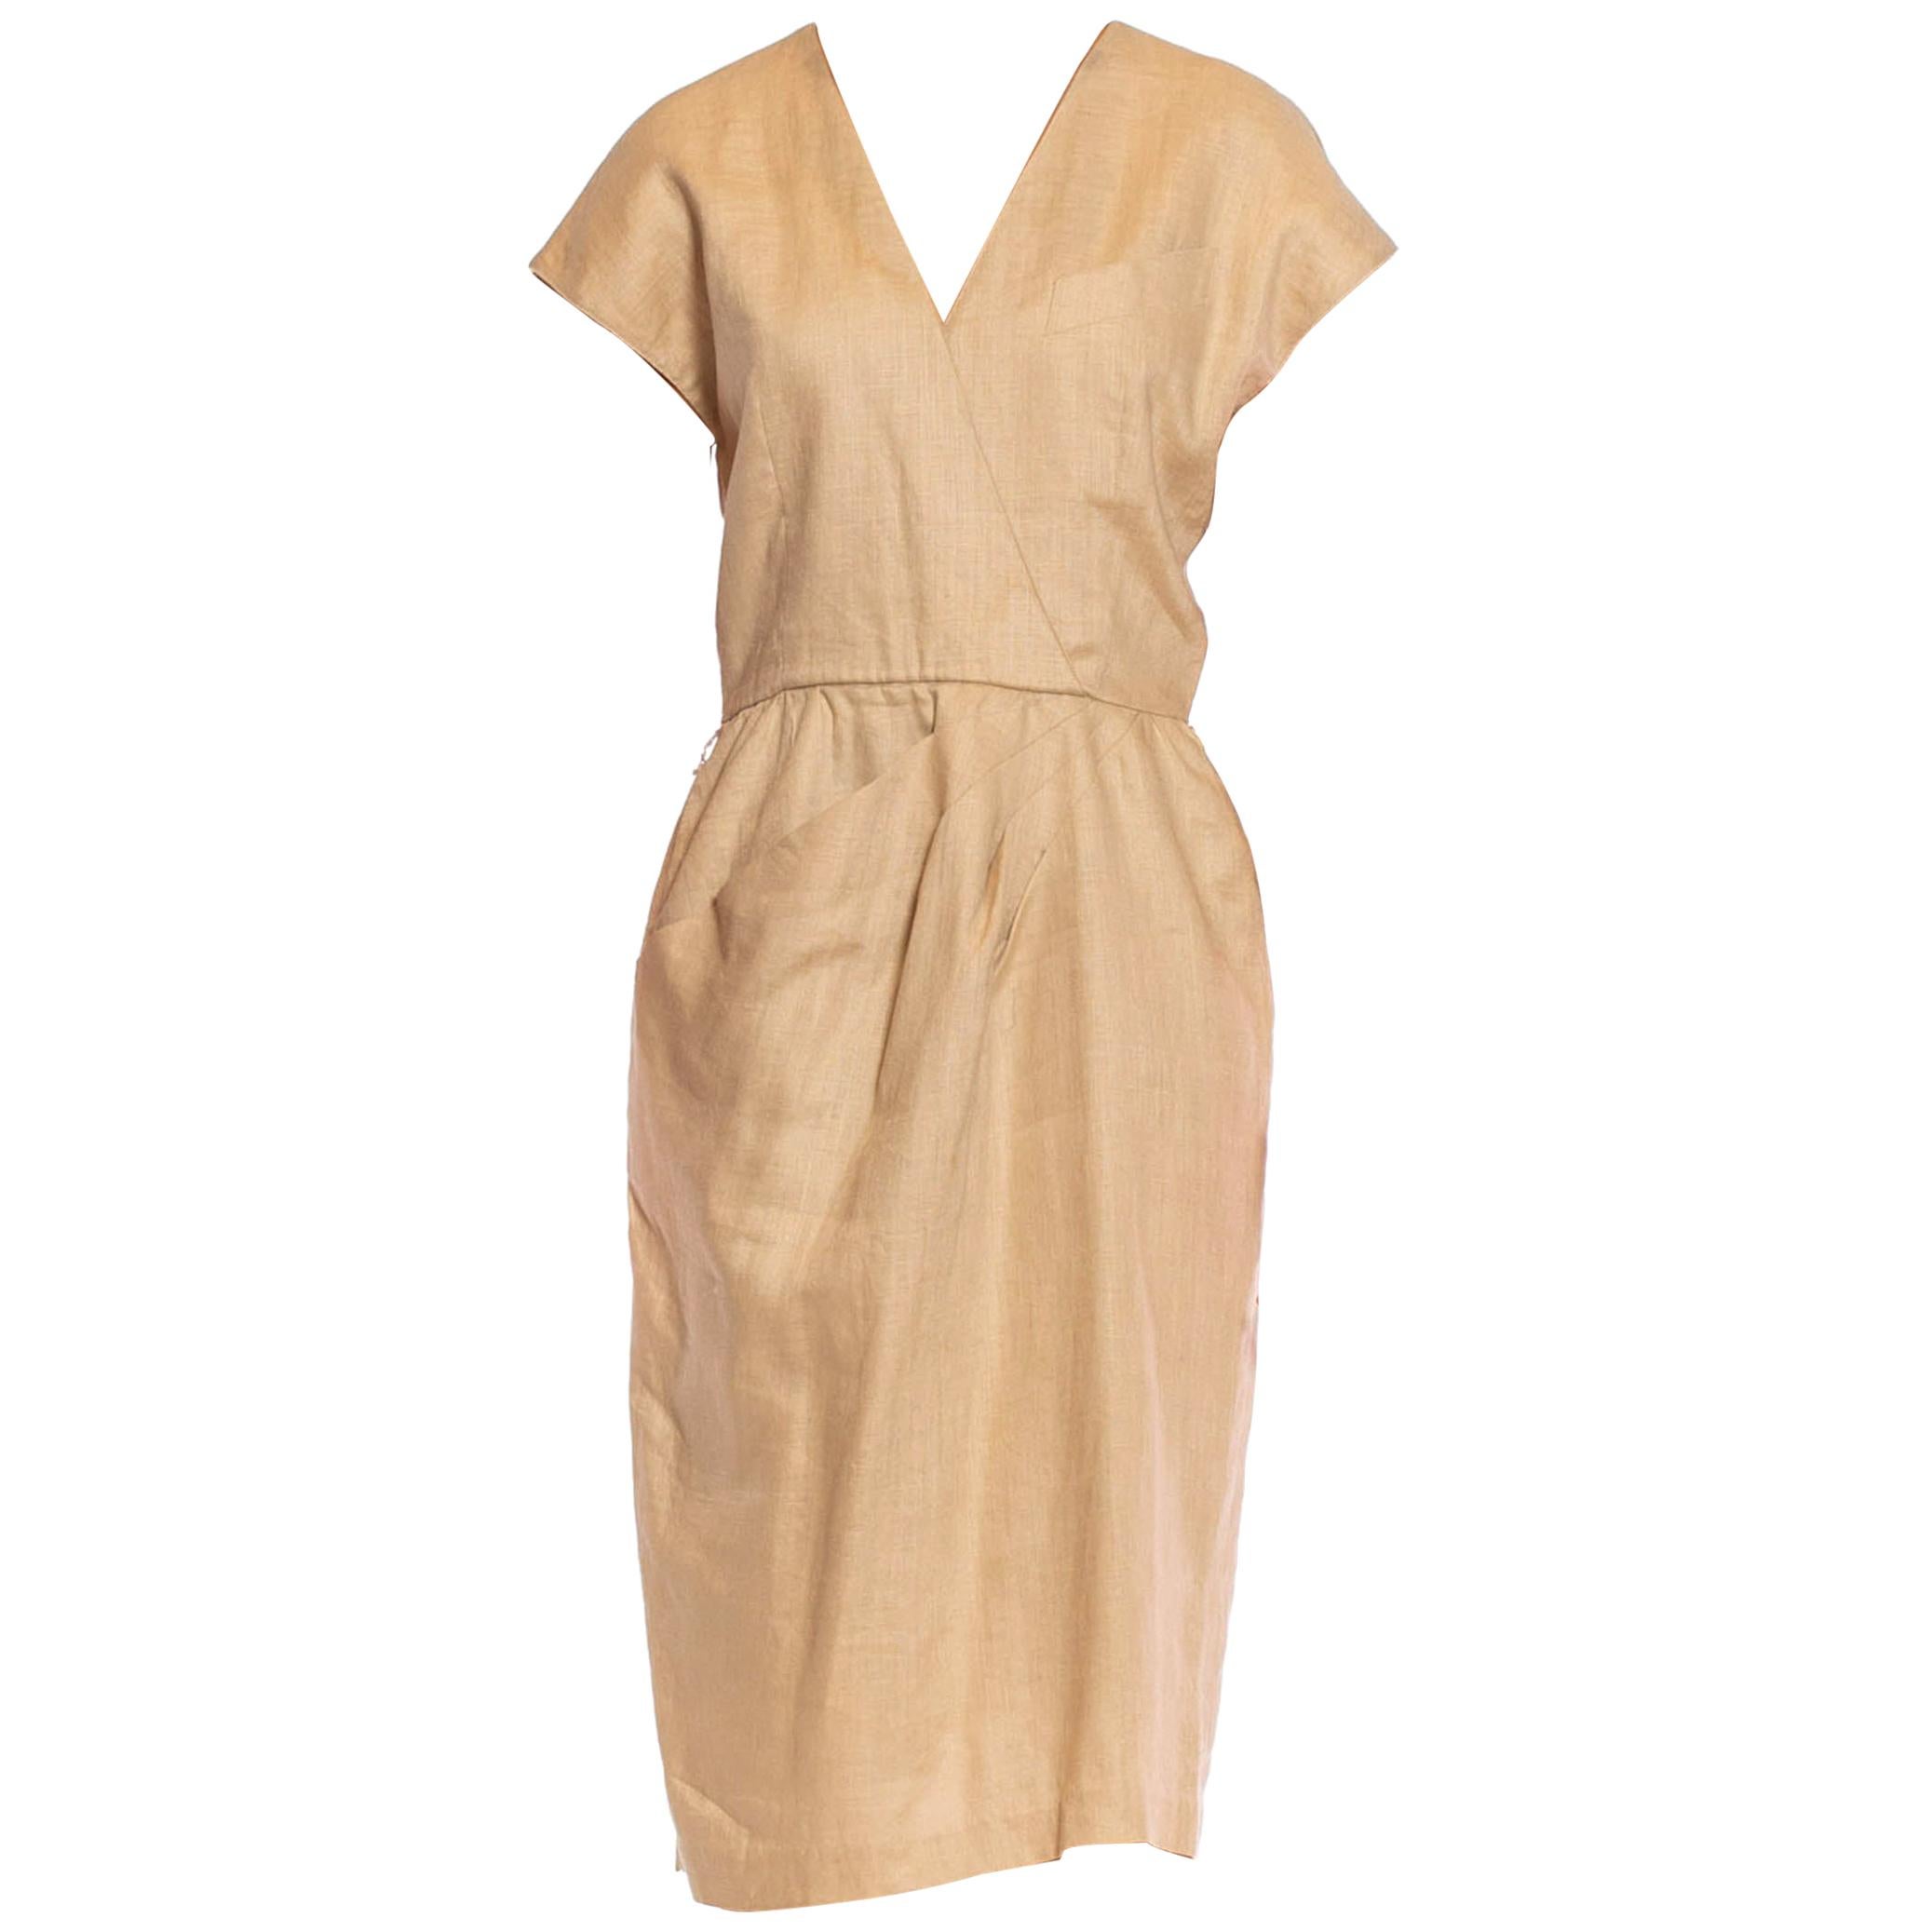 1980S Beige Linen Blend Dress Lined In Rayon